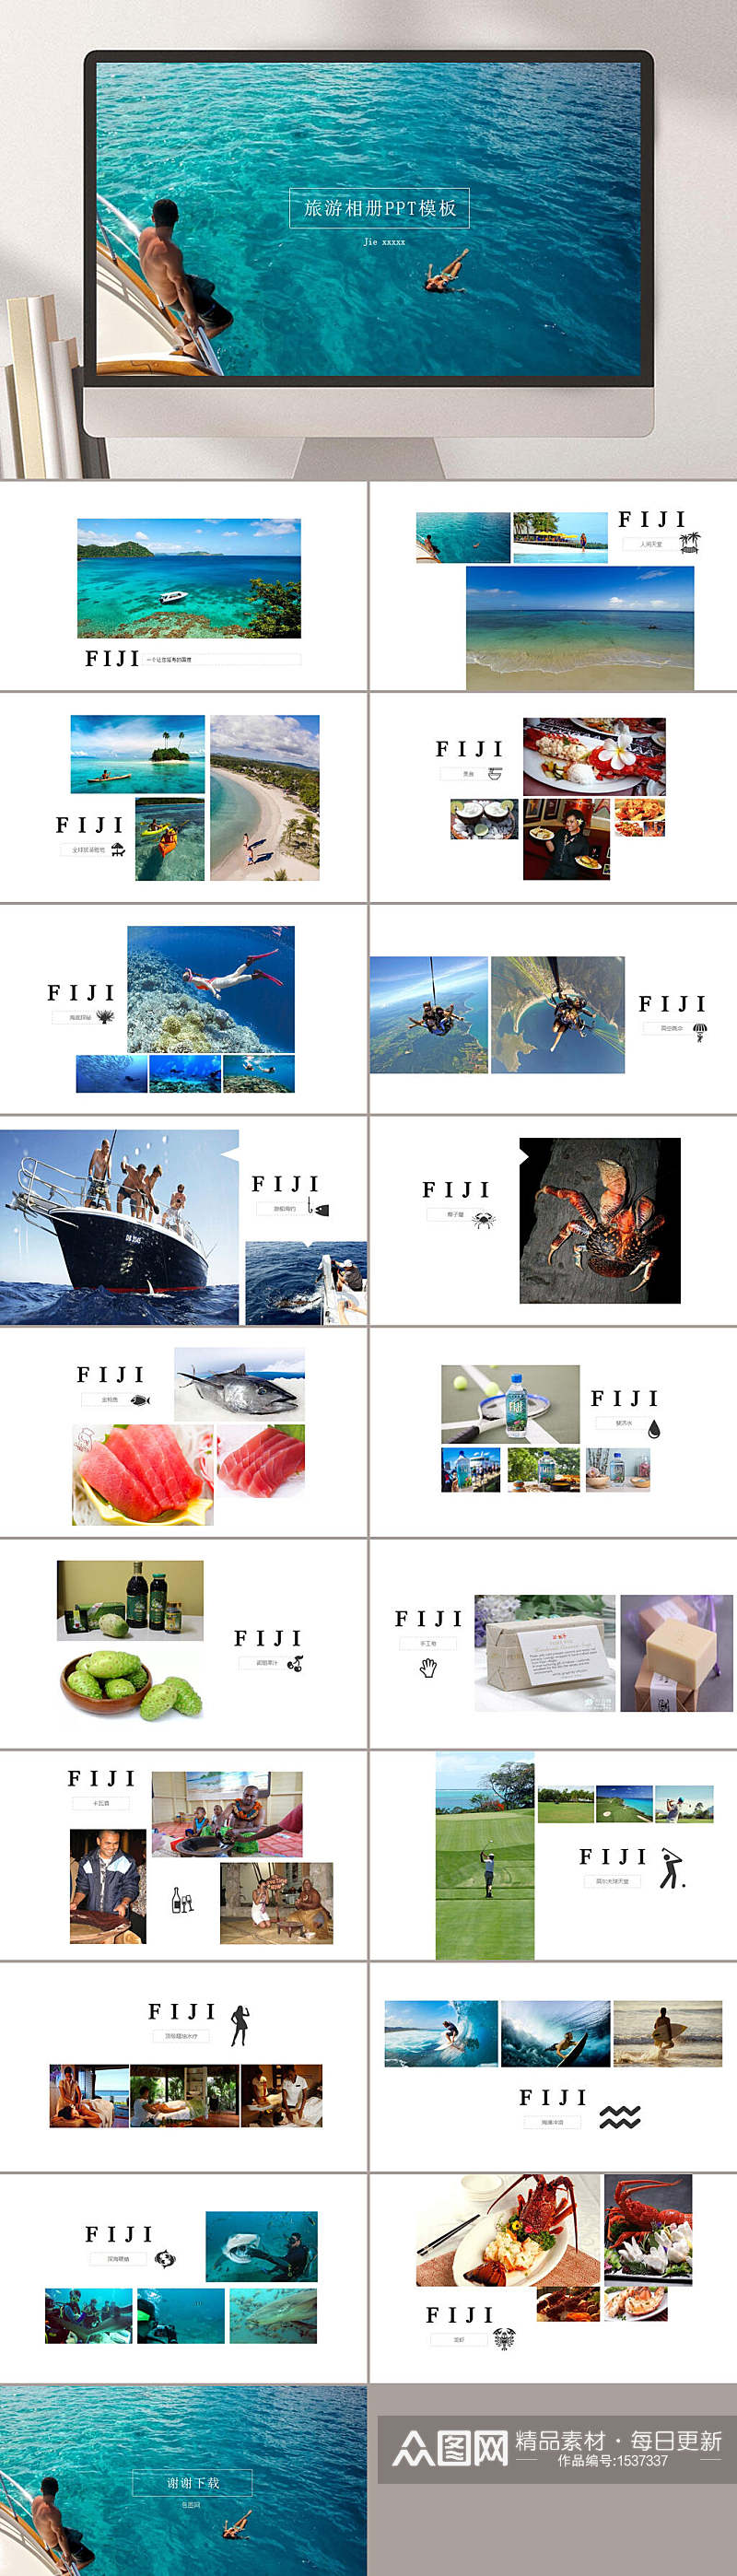 大海旅行照片PPT模板素材